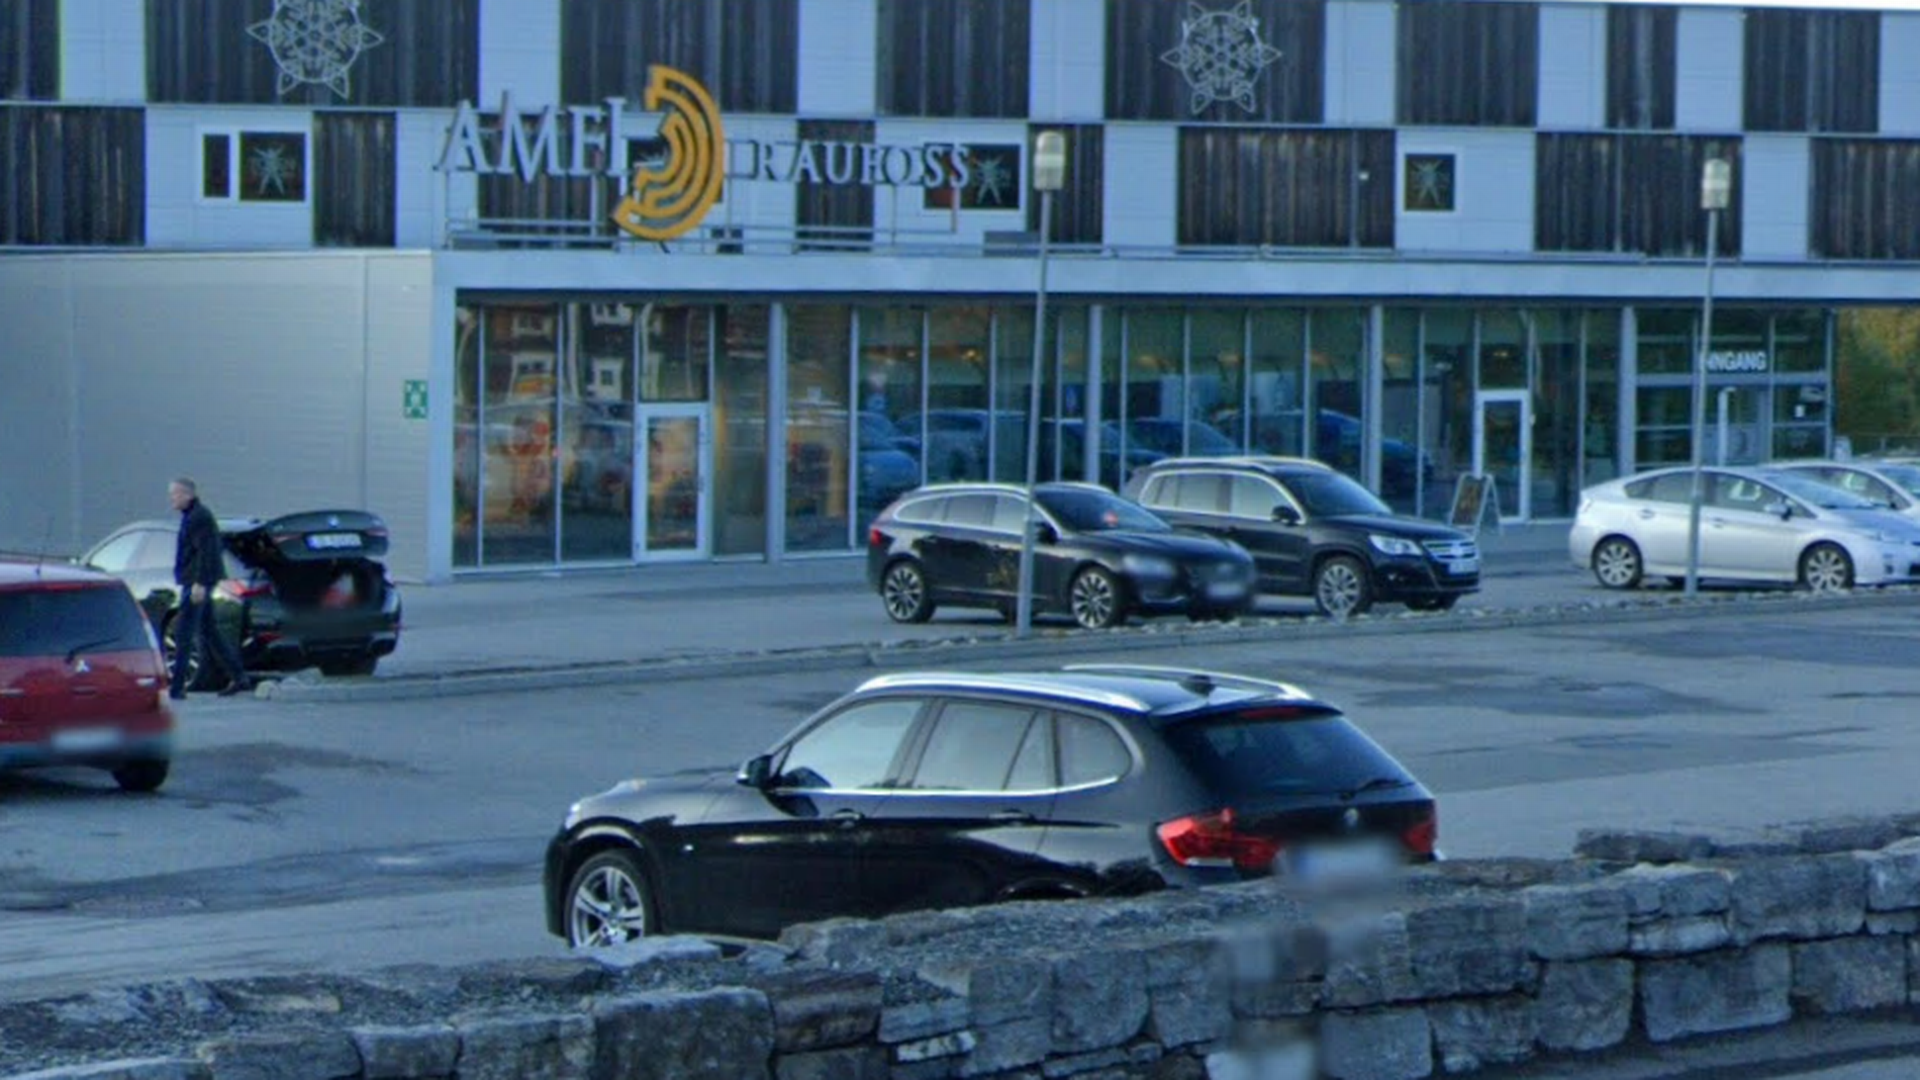 Ringo-butikken har holdt til på Amfi Raufoss. | Foto: Google Street View